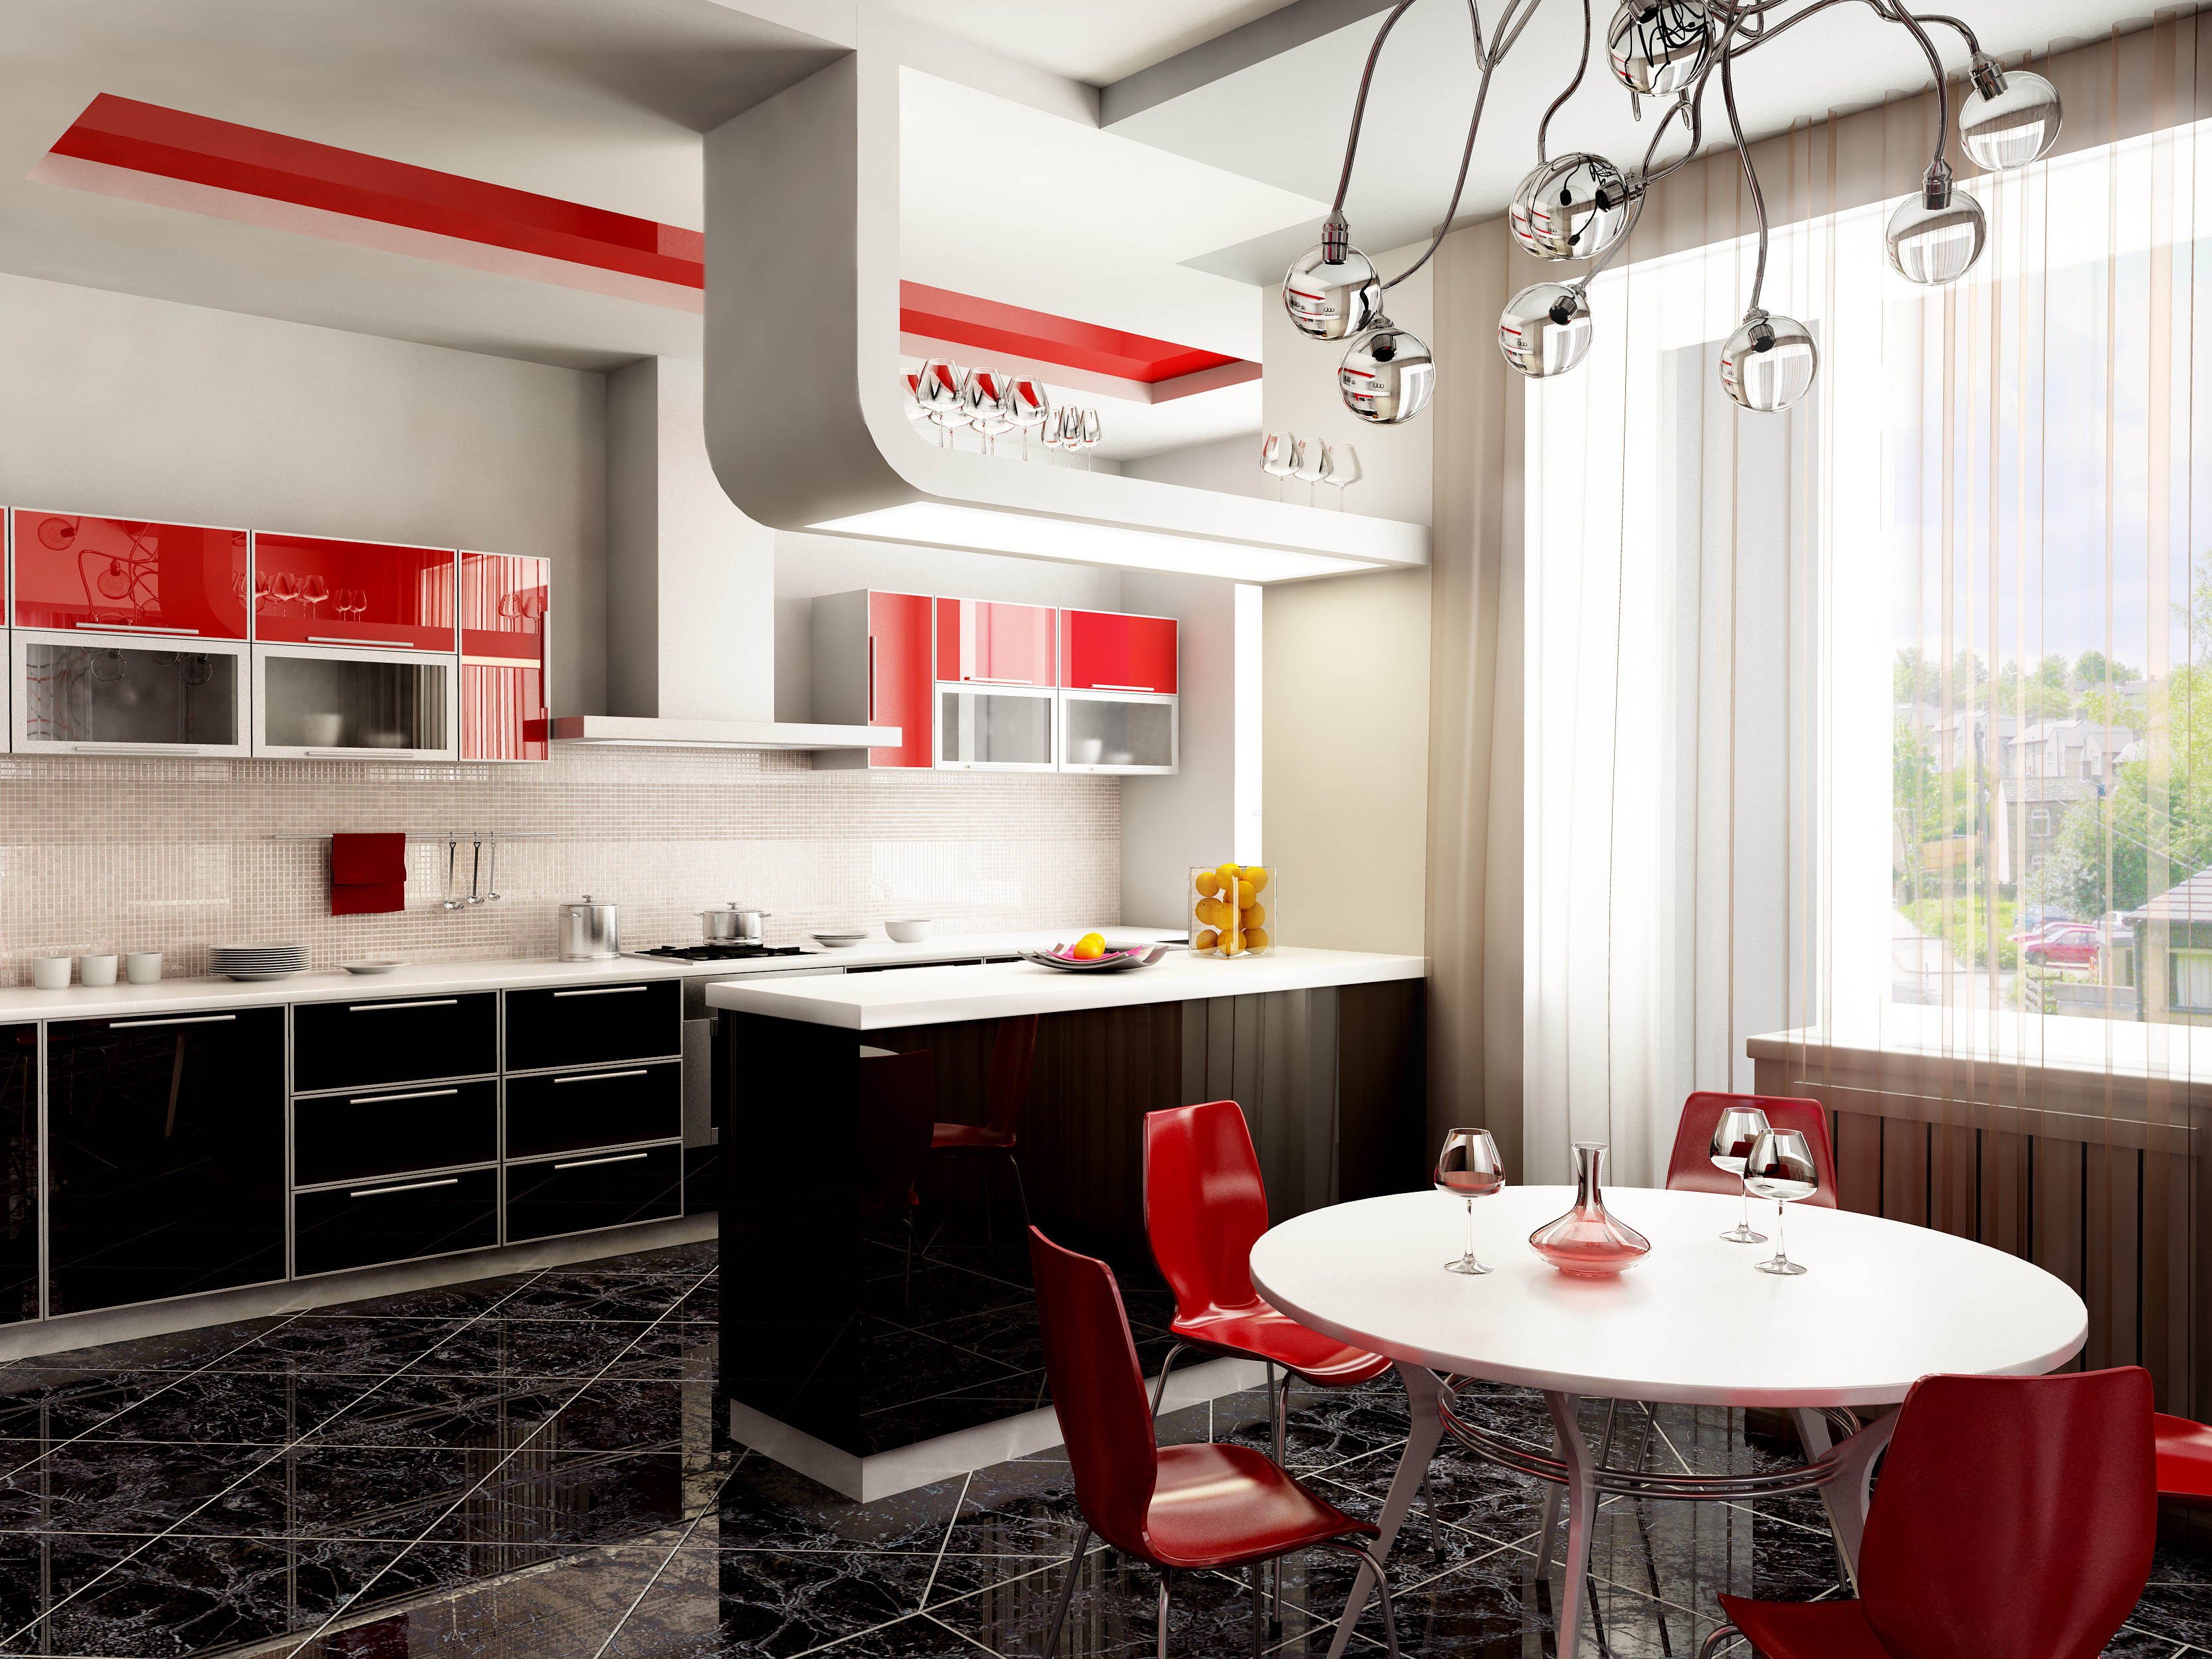 Современный дизайн кухонного гарнитура в красно-чёрной гамме